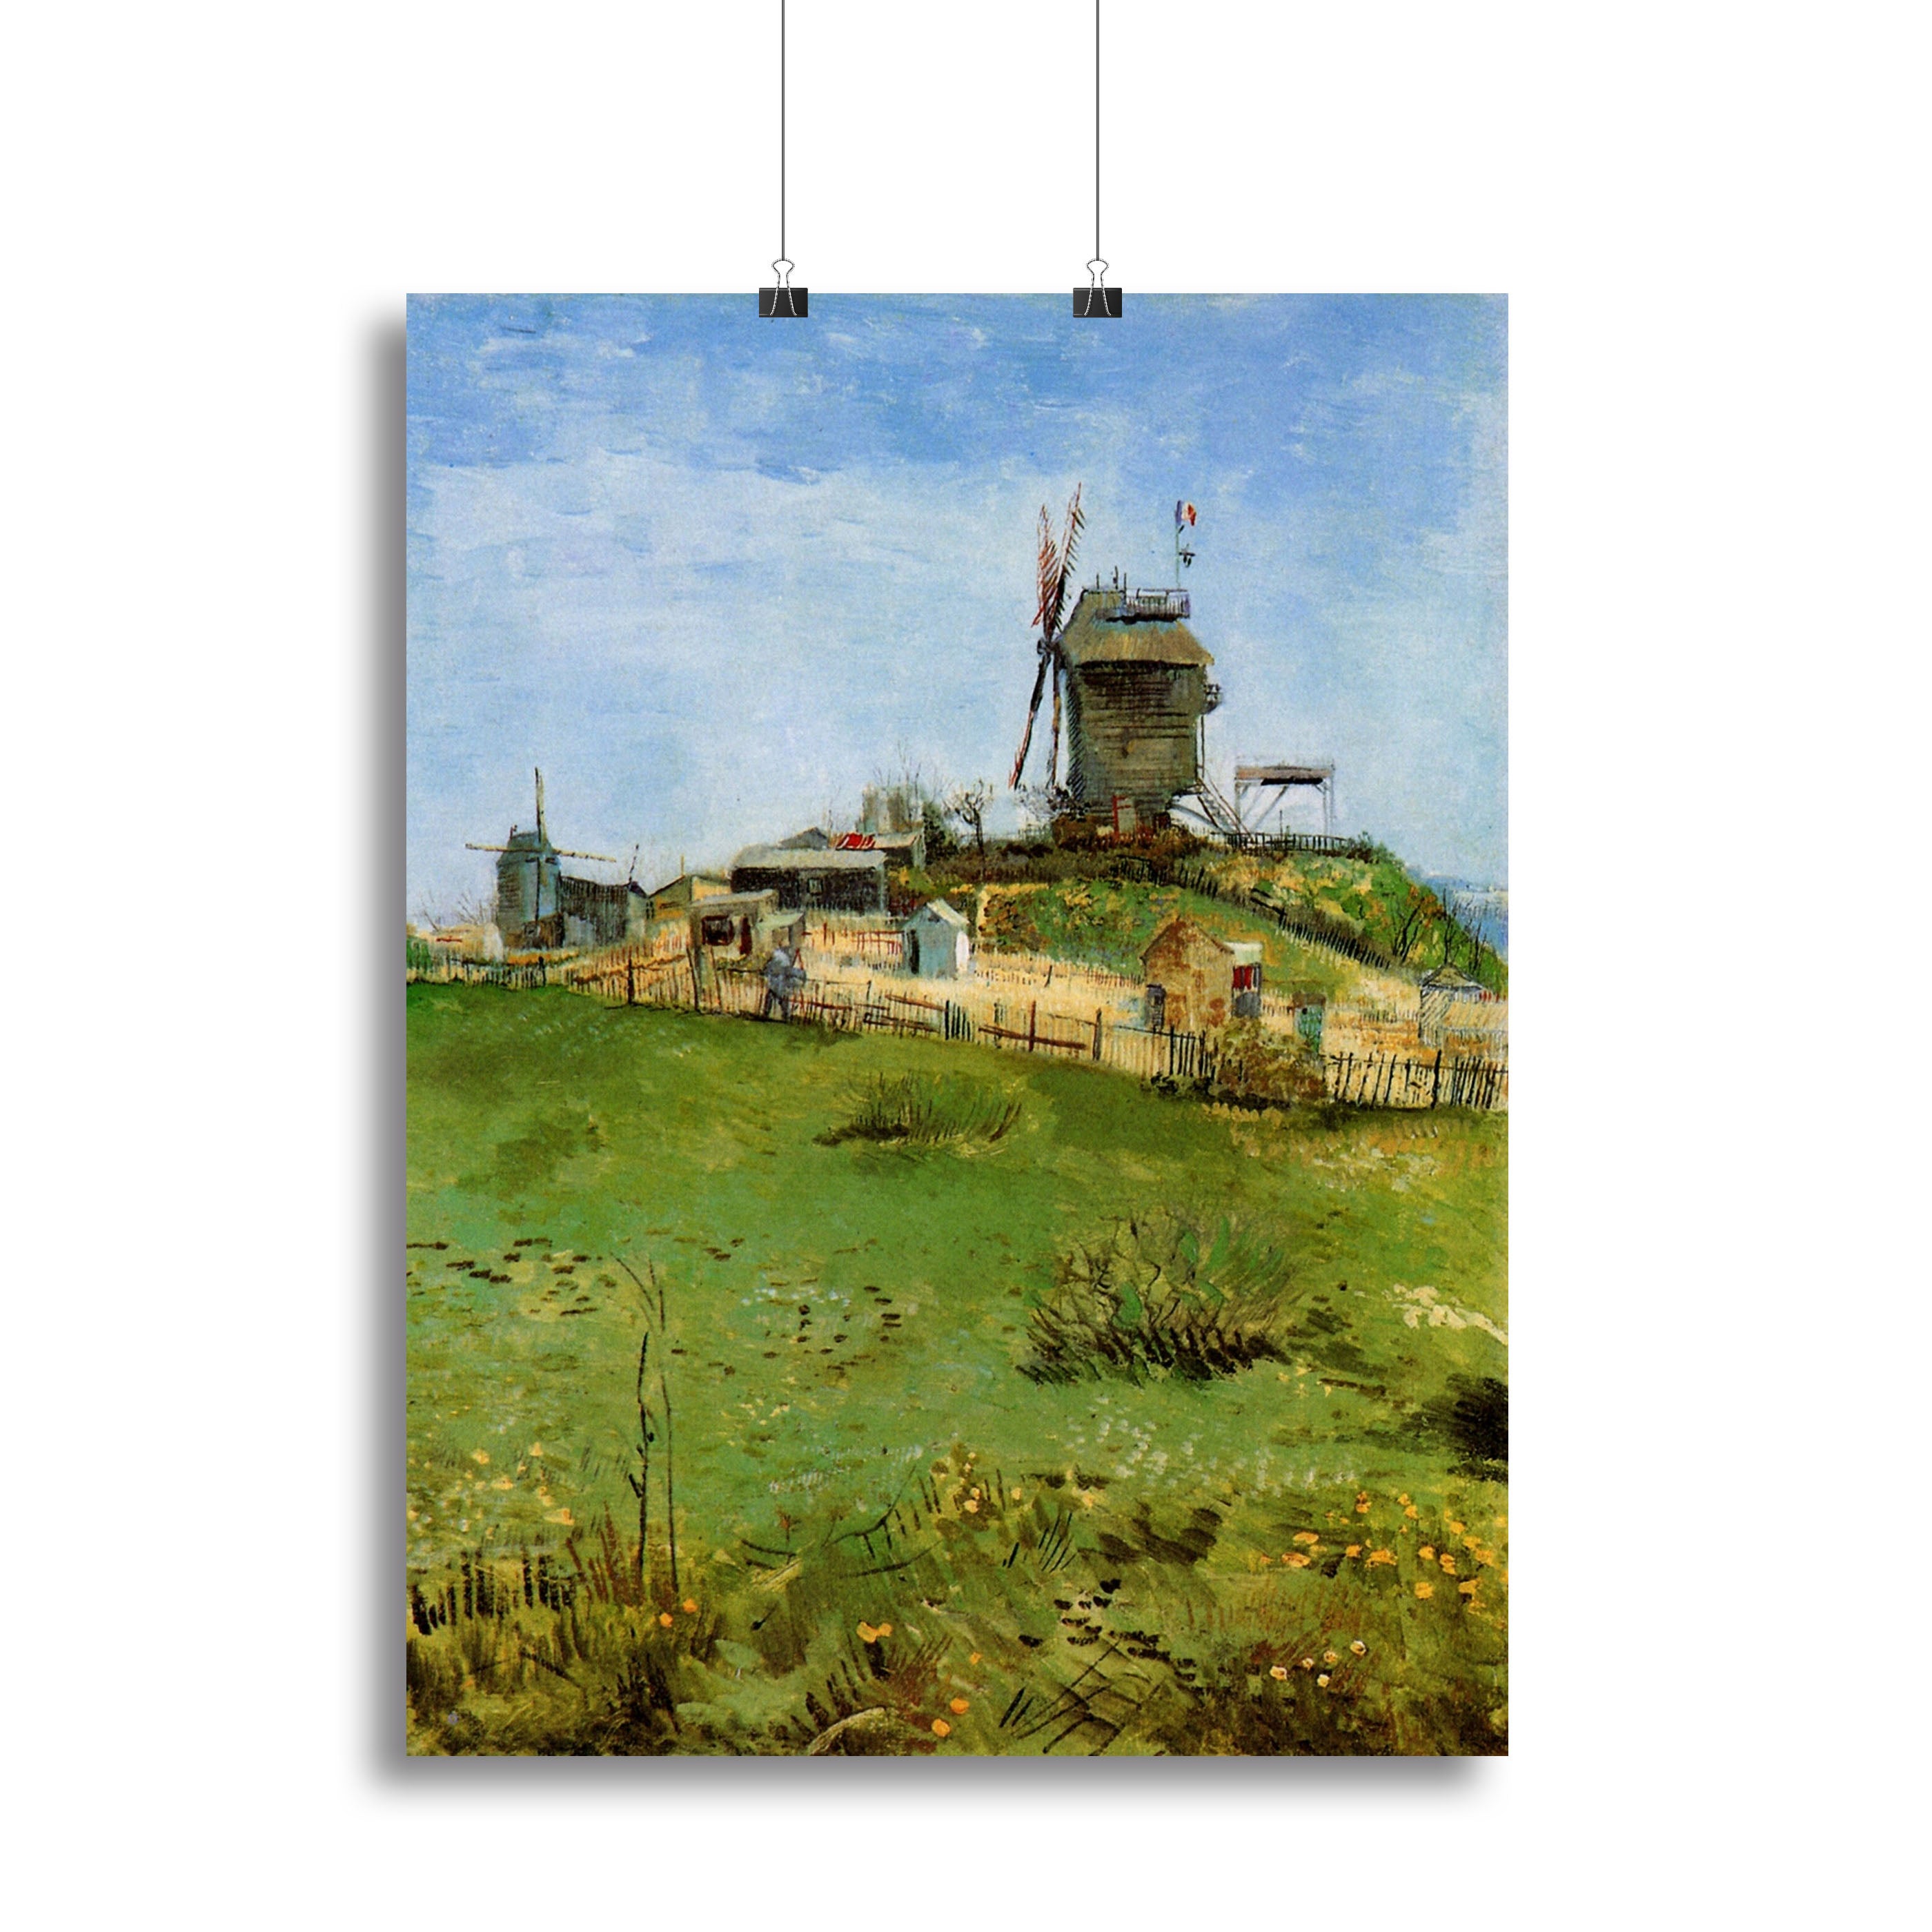 Le Moulin de la Galette 4 by Van Gogh Canvas Print or Poster - Canvas Art Rocks - 2